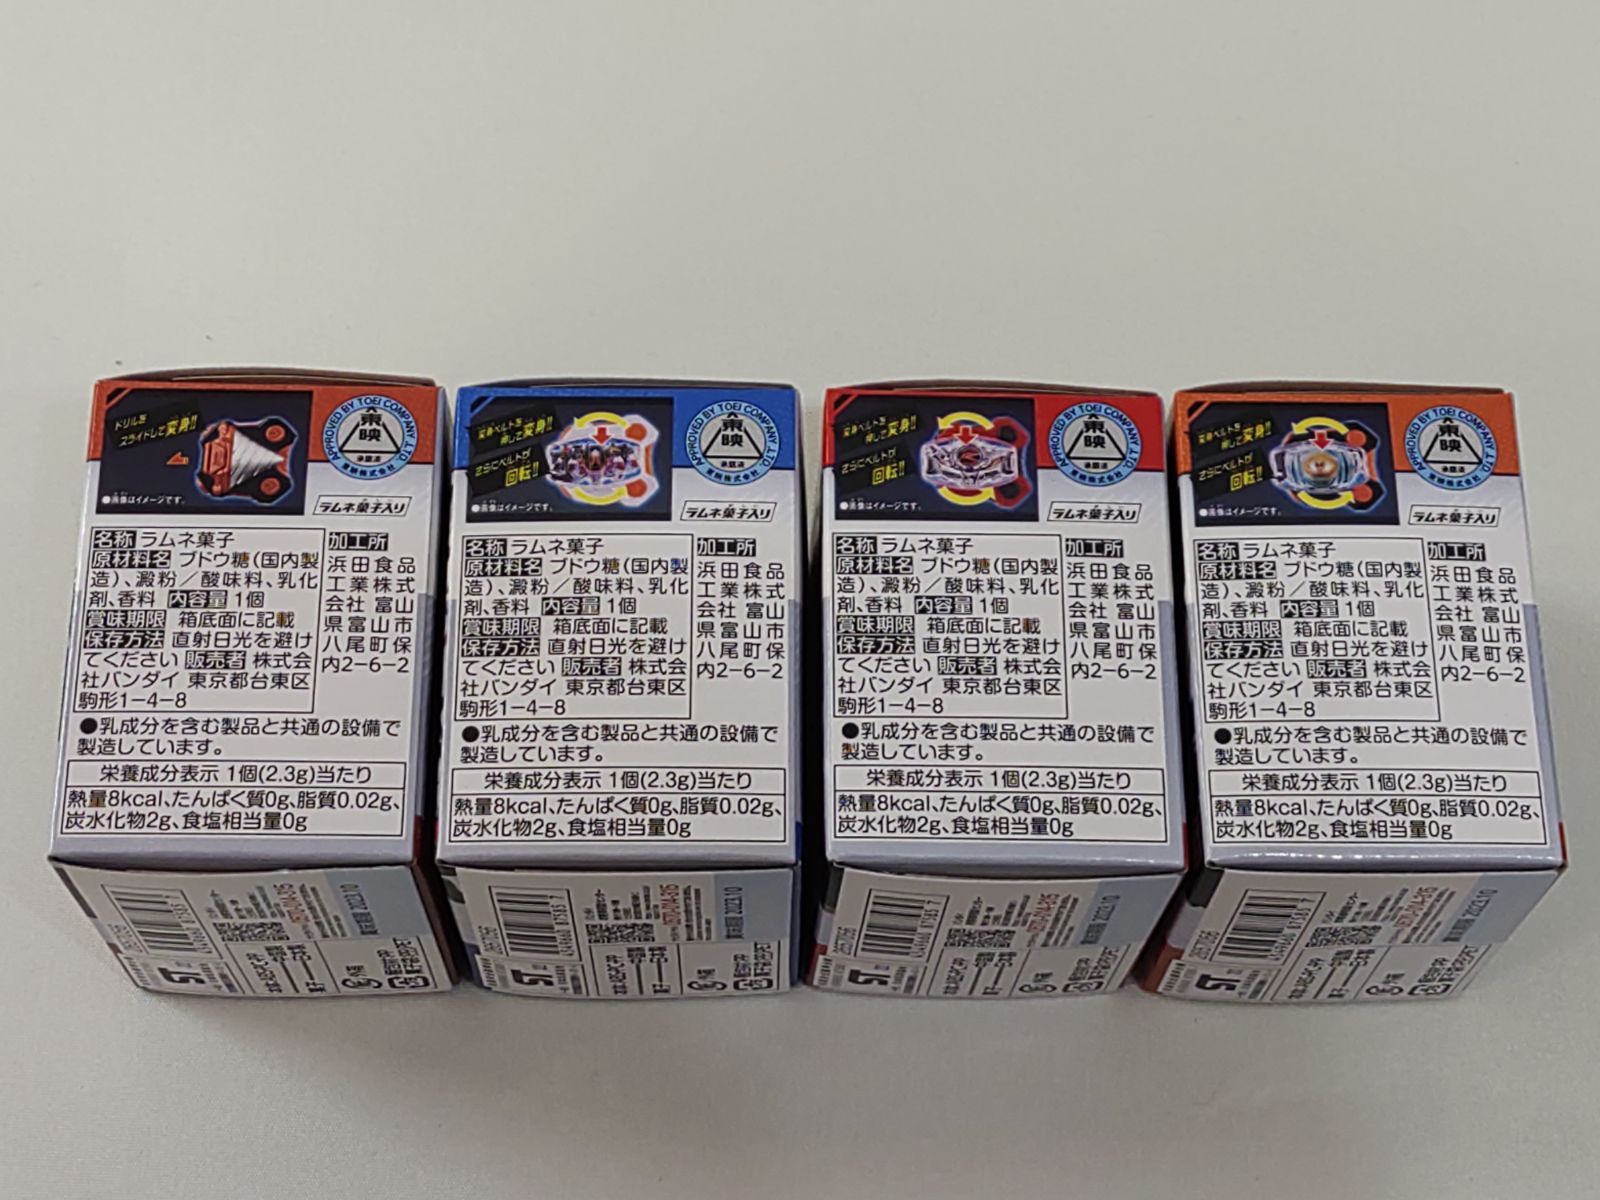 SGレイズバックル4 仮面ライダーギーツ 4種 コンプリートセット